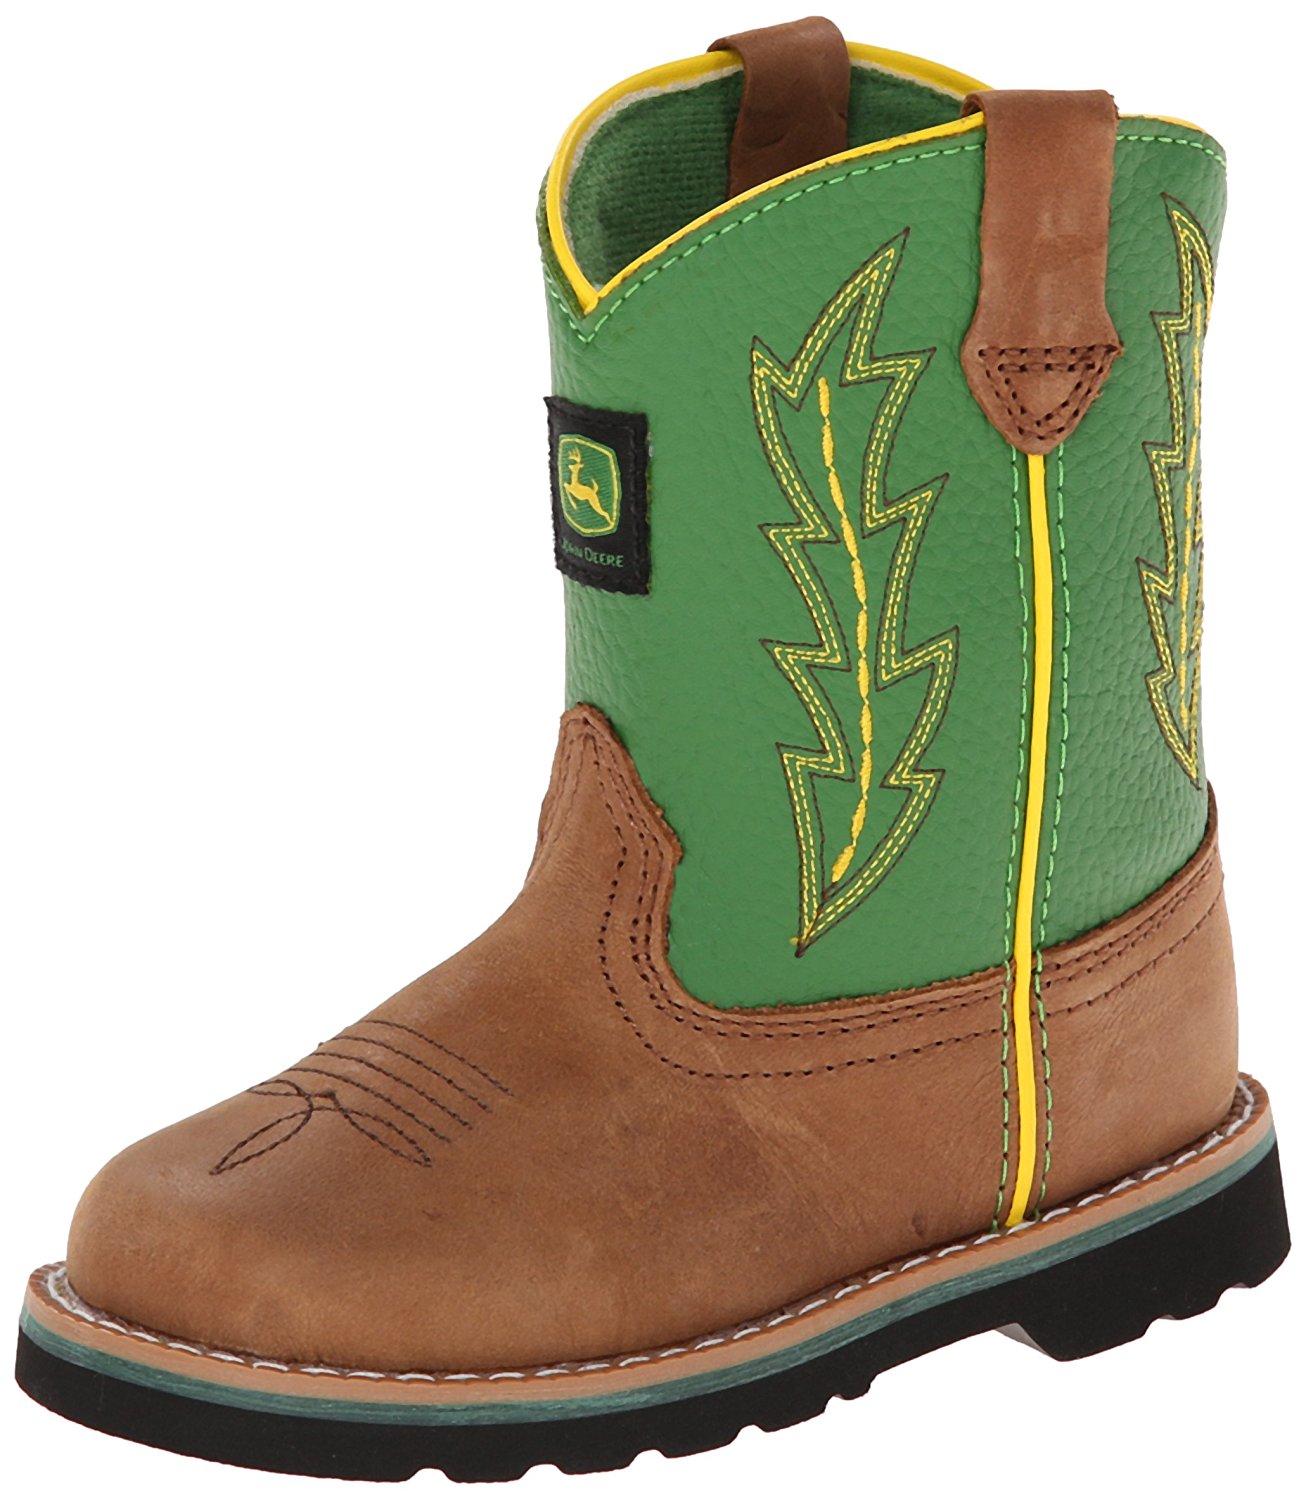 john deere boots amazon.com | john deere 1186 western boot (toddler) | boots nsvhamc